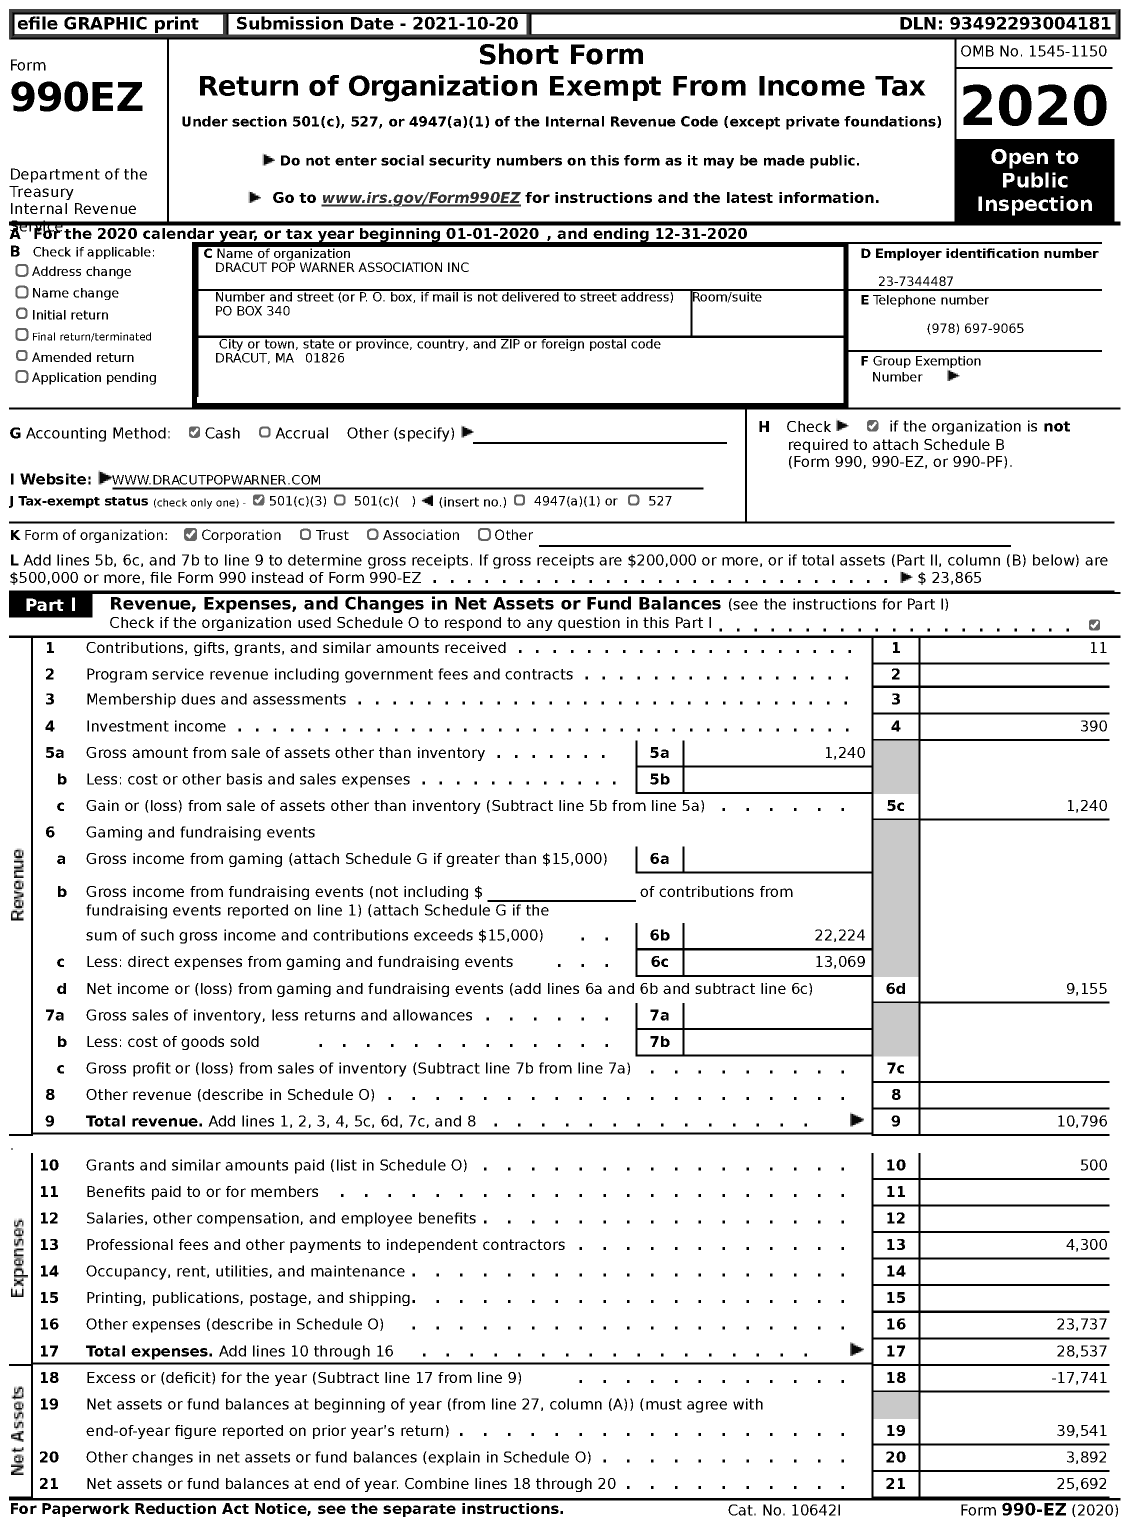 Image of first page of 2020 Form 990EZ for Dracut Pop Warner Association